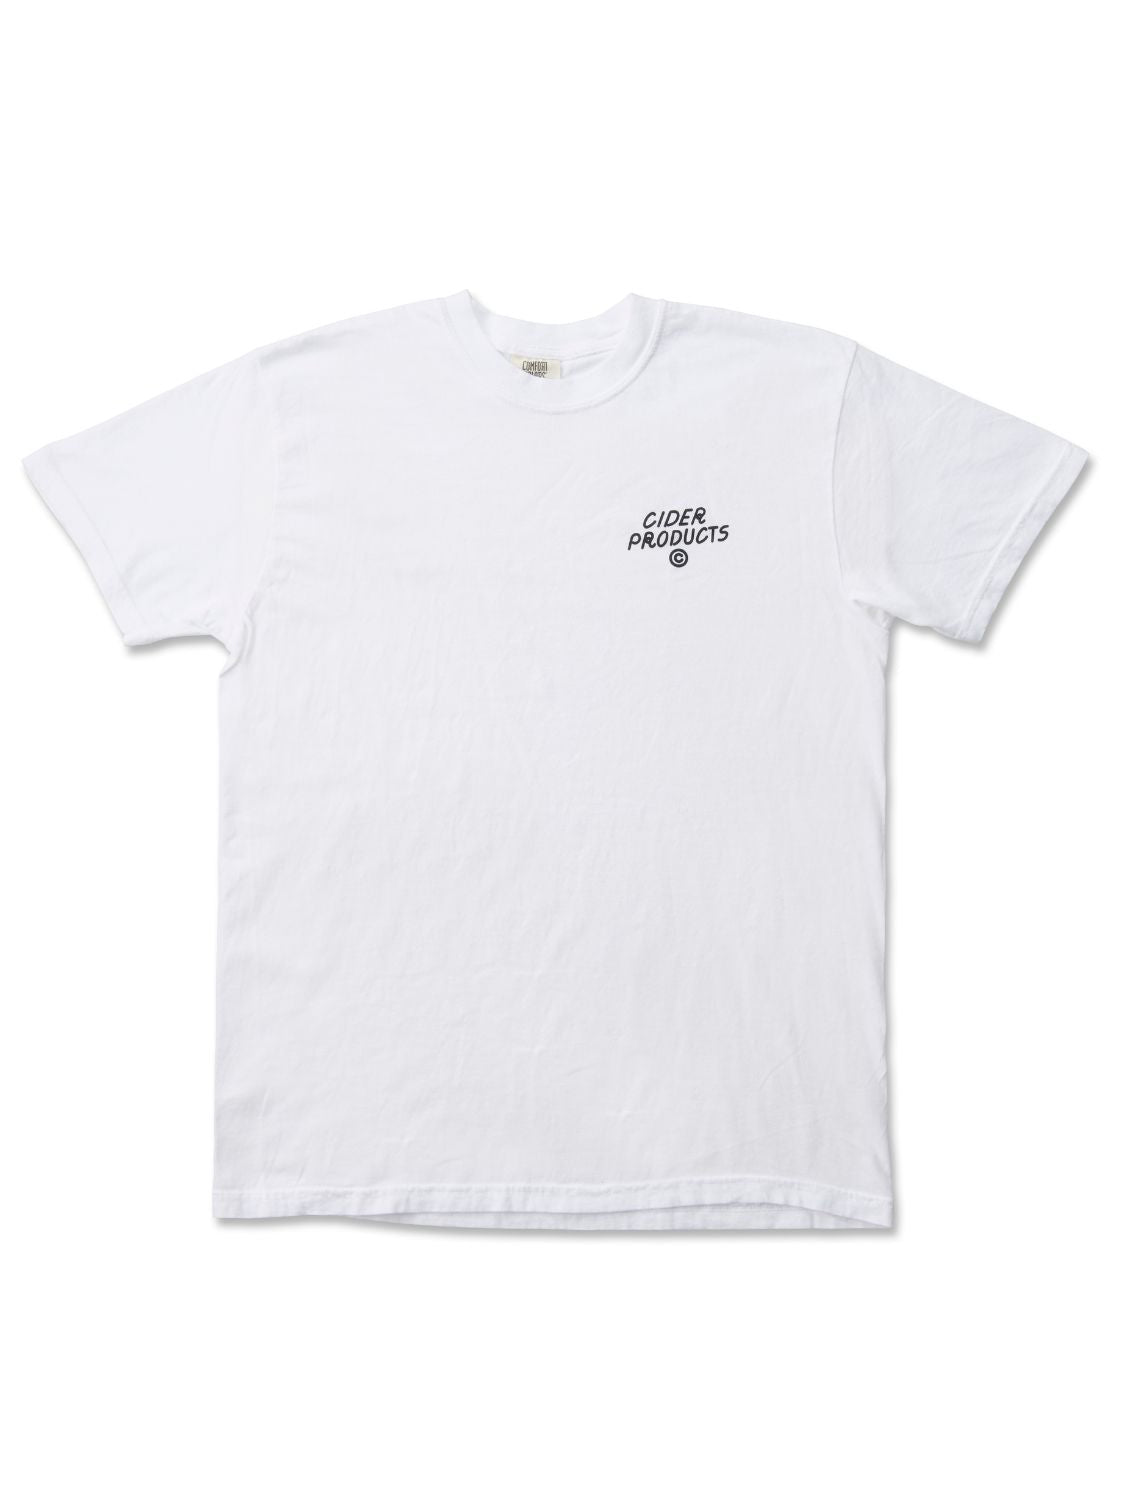 OIMO UNIV. Tshirt・お芋大学Tシャツ・ホワイト｜CIDER PRODUCTS